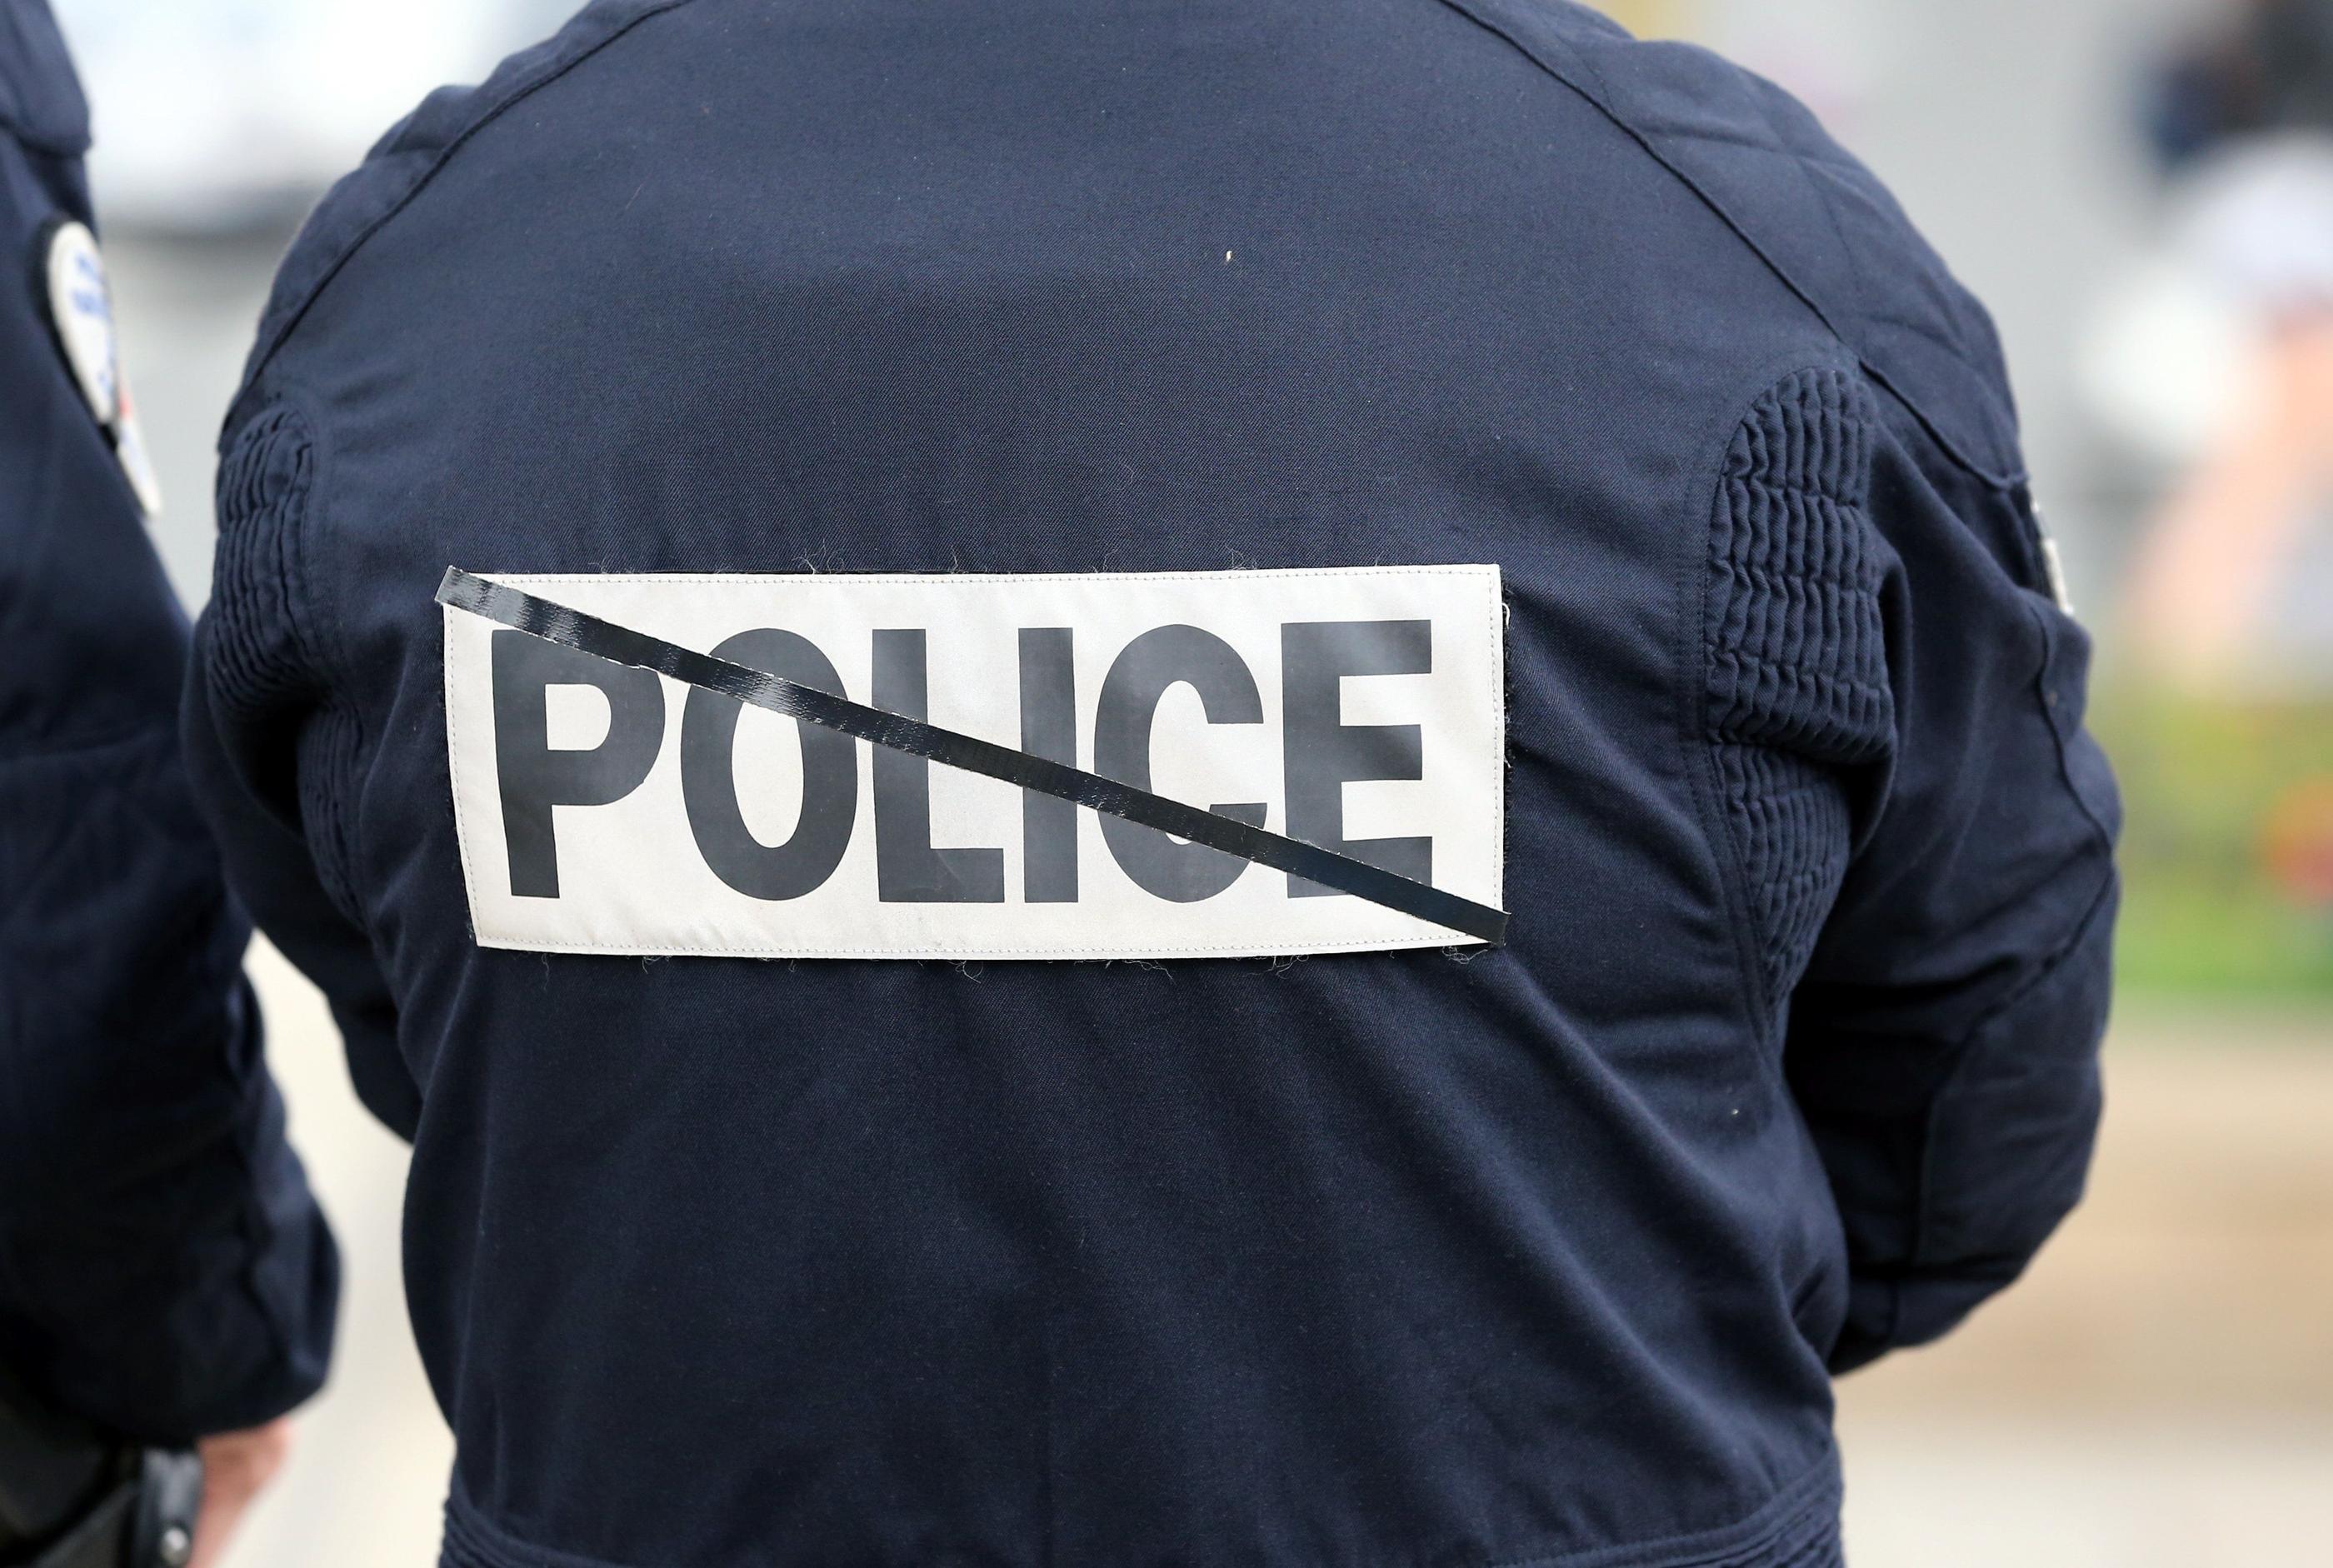 Les faits se sont déroulés vendredi vers 20h30, alors que les policiers intervenaient pour un «attroupement avec tapage, dans la rue» (illustration). LP/Arnaud Journois